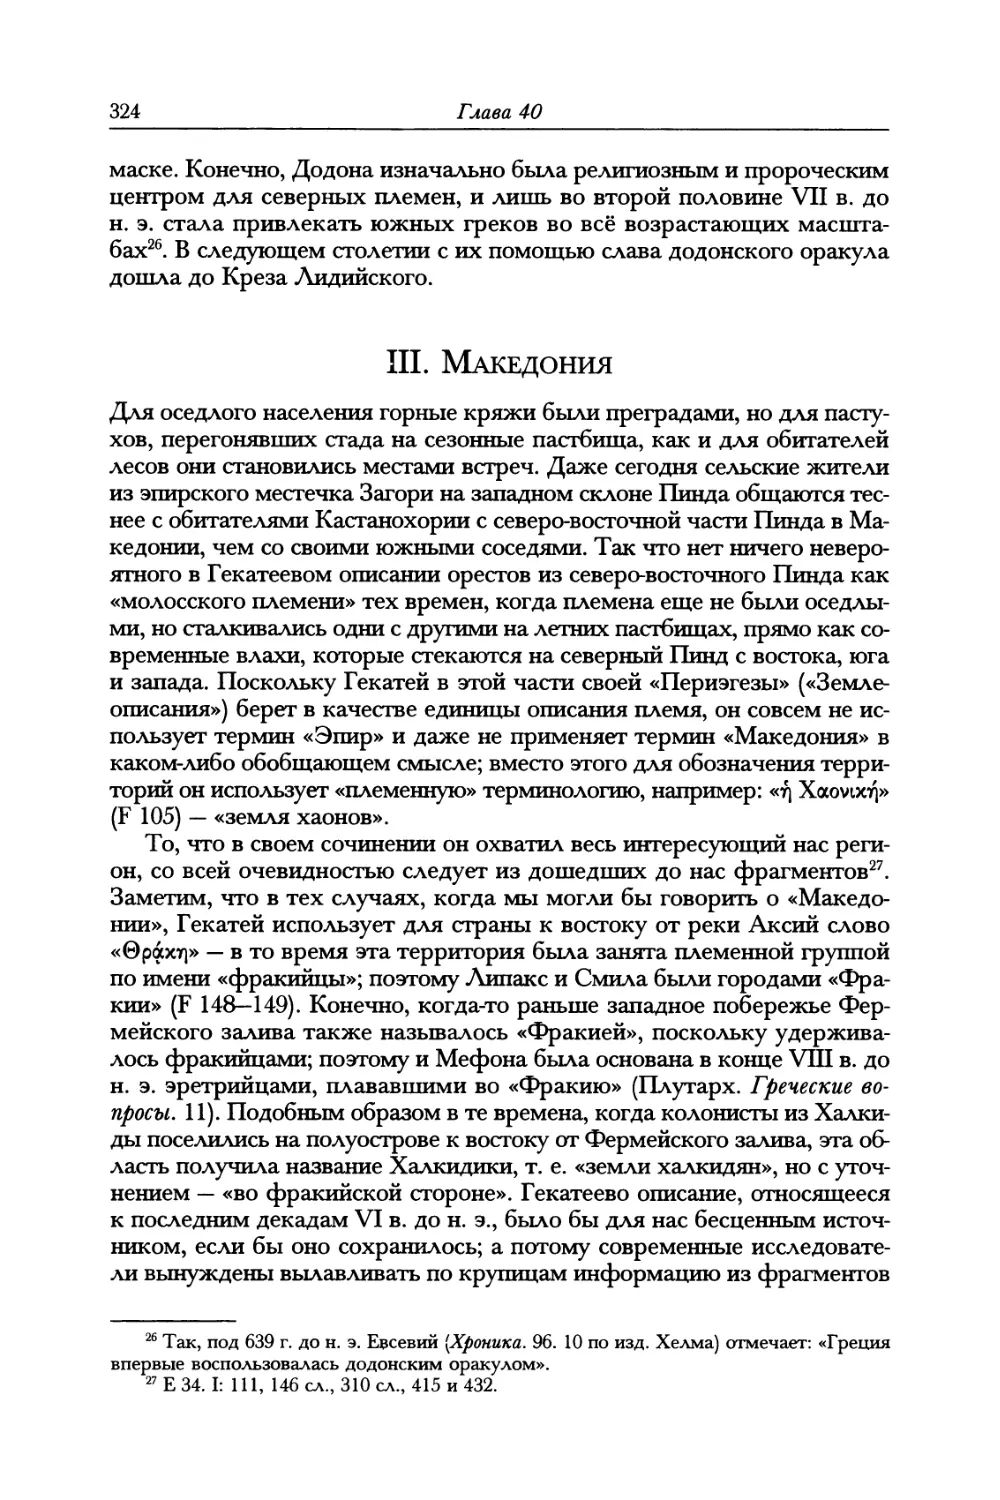 III. Македония